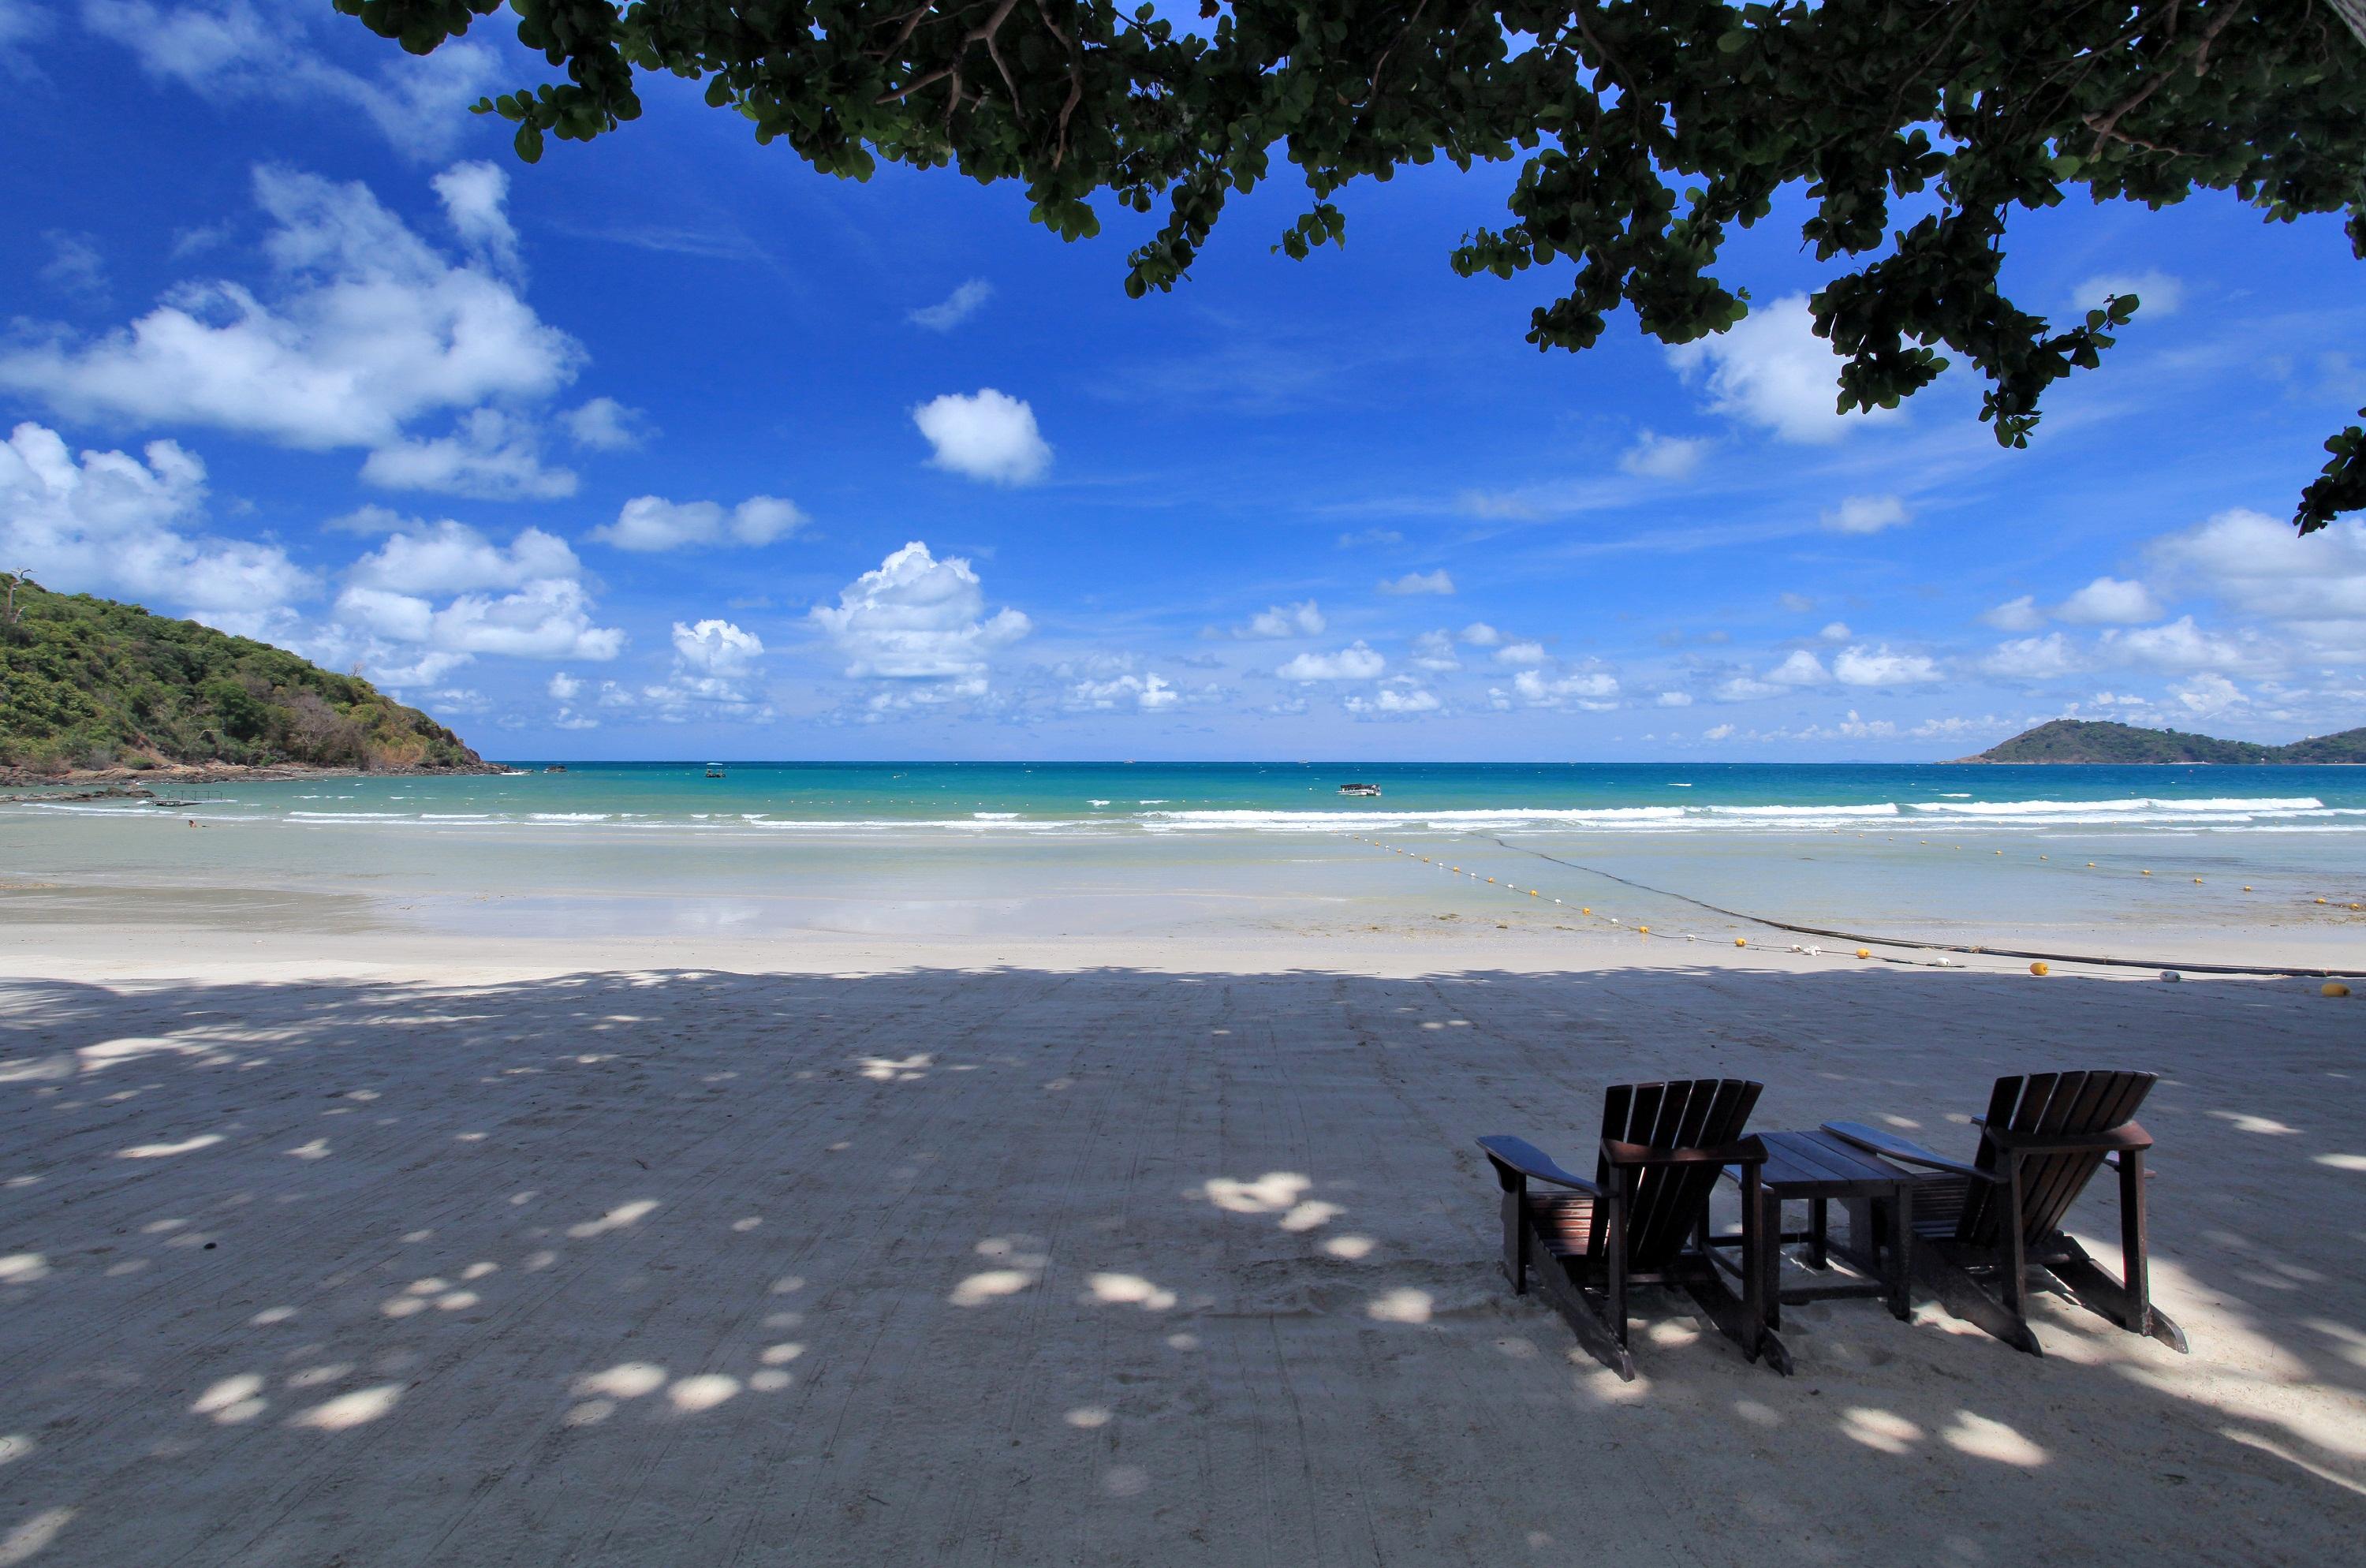 Foto af Prao Beach - populært sted blandt afslapningskendere